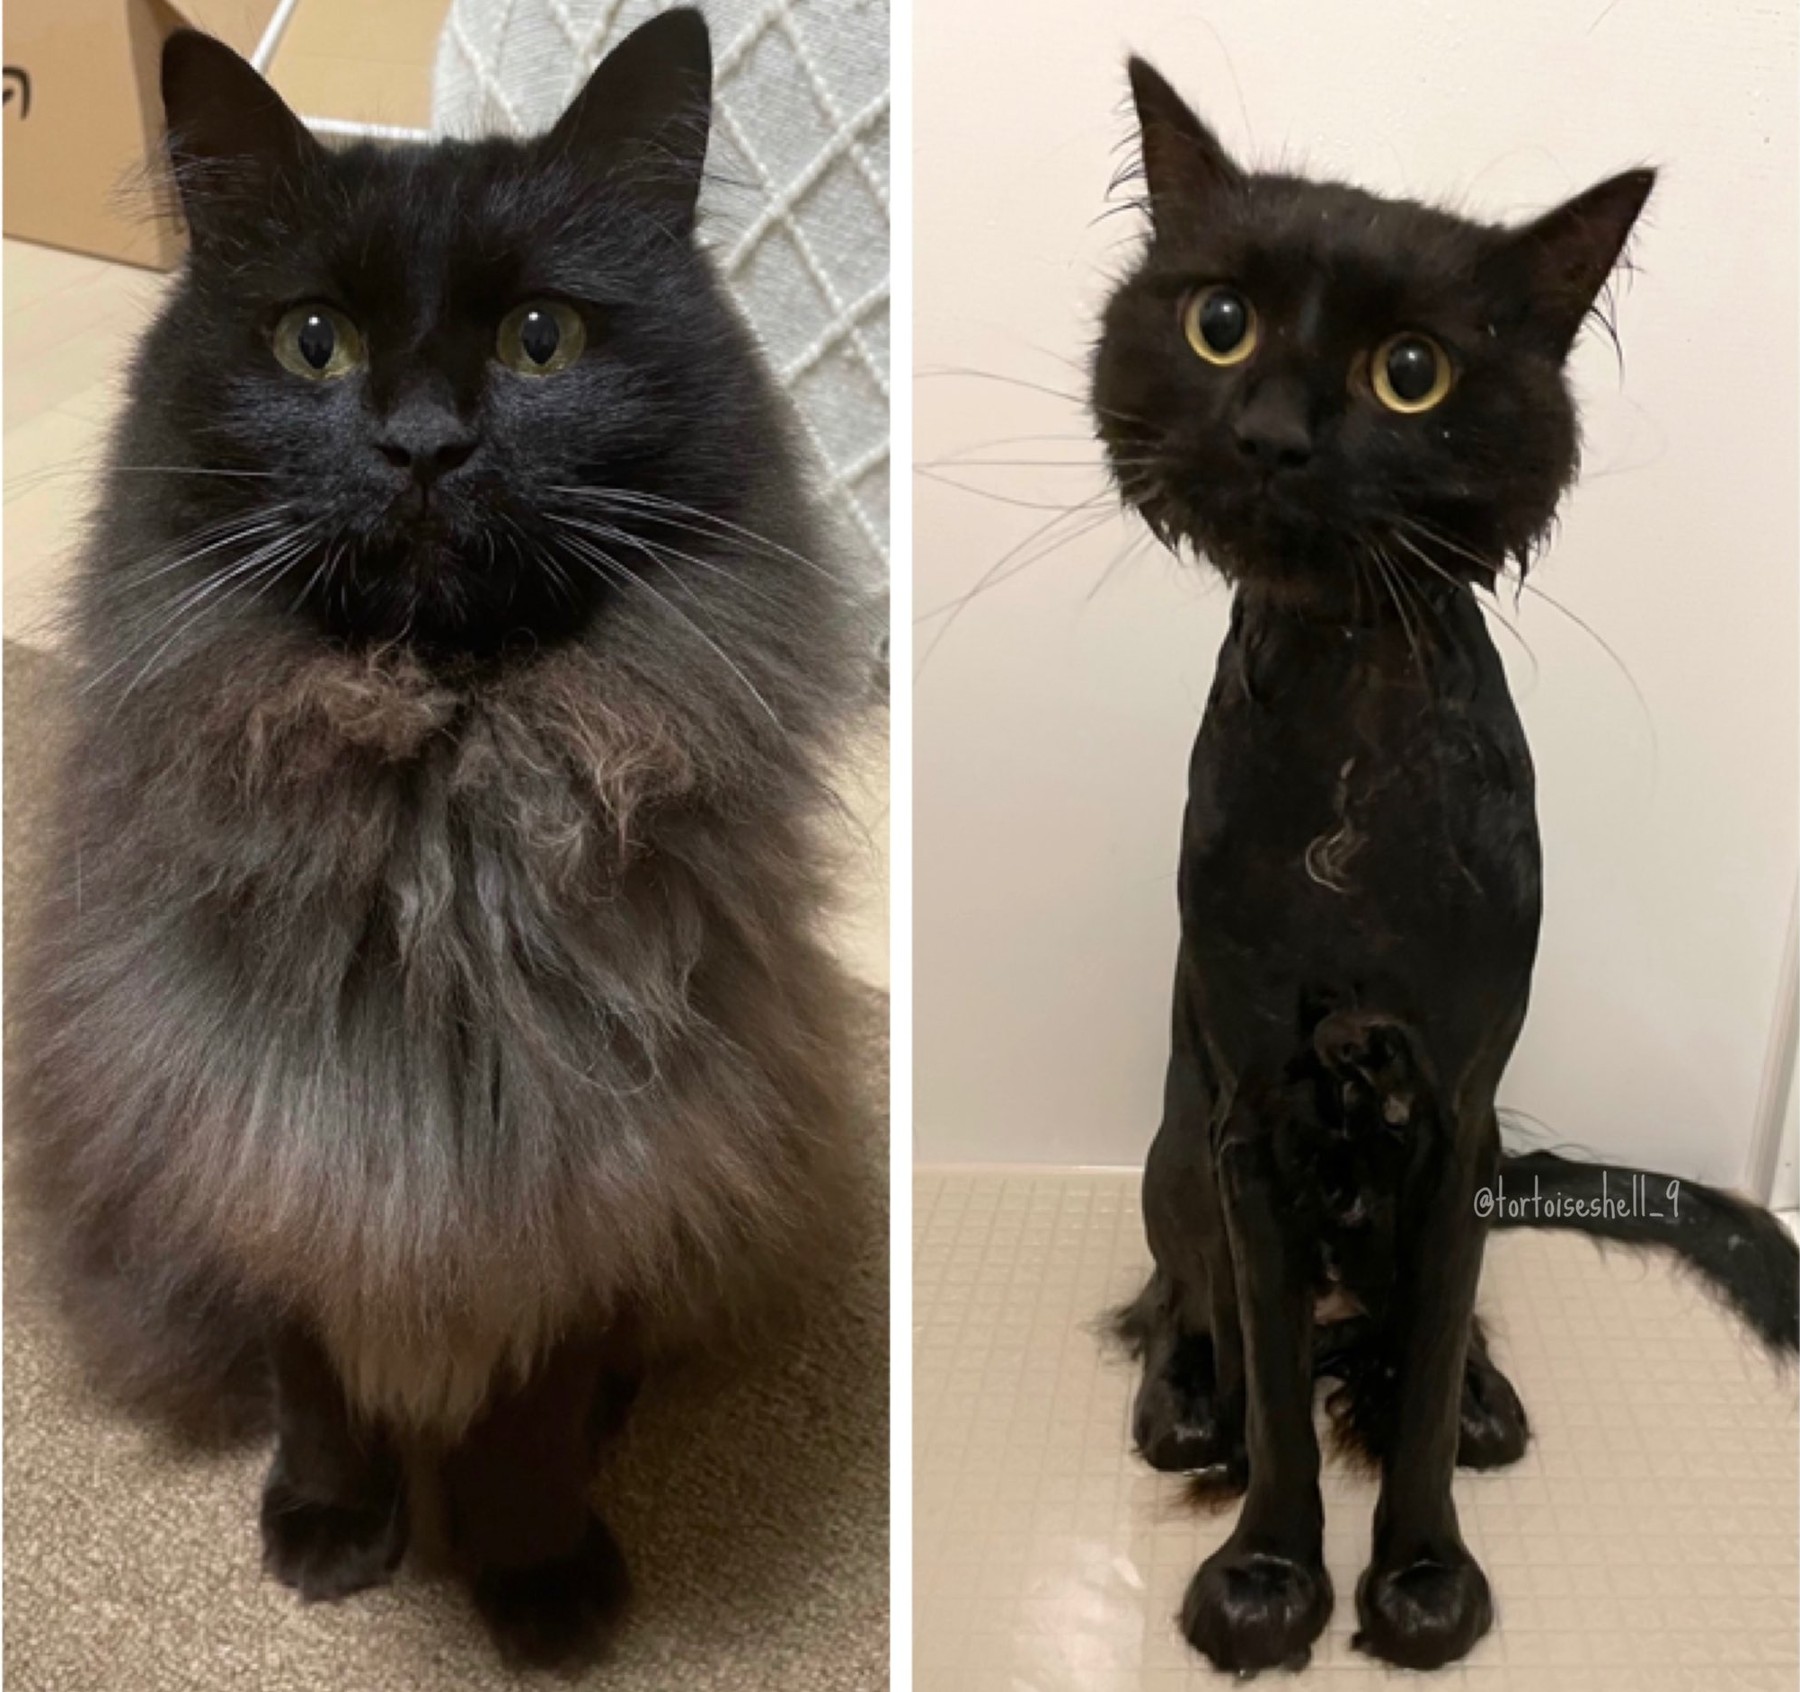 洗ってる間ママずっと笑ってて本当にごめんね 笑 お風呂に入った黒猫のビフォーアフター写真が笑っちゃうしかないかわいさ ねとらぼ